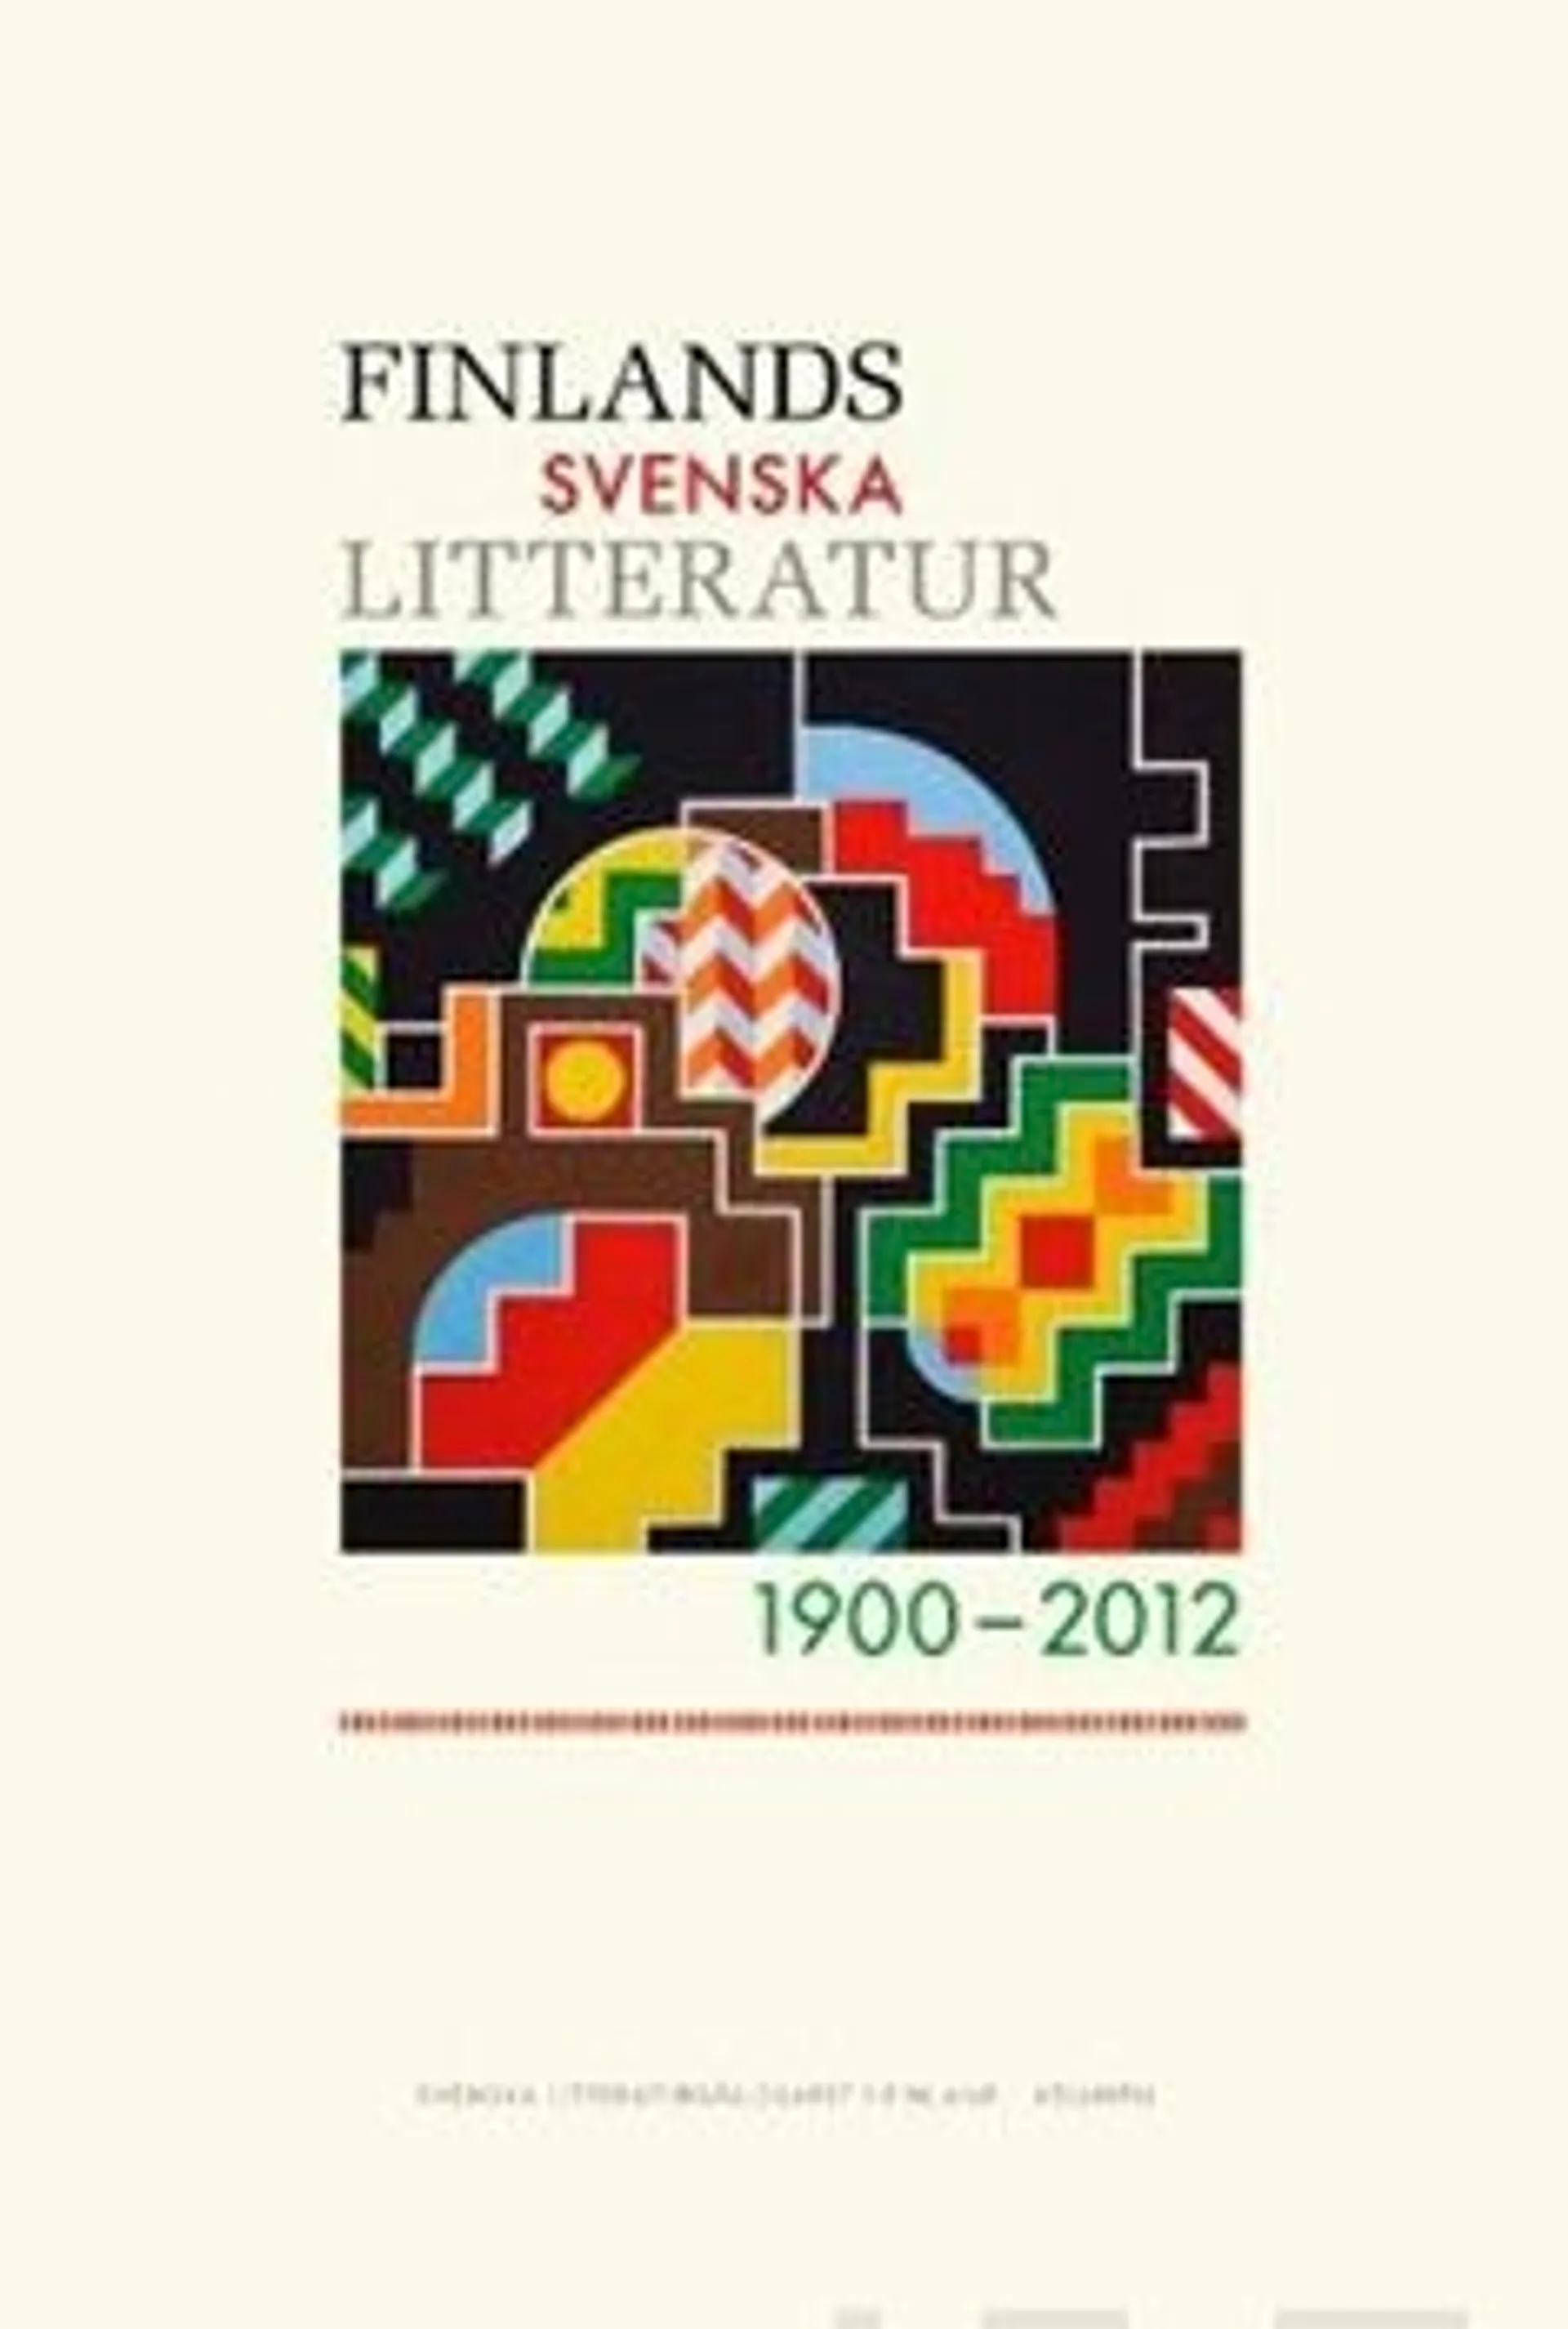 Finlands svenska litteratur 1900-2012